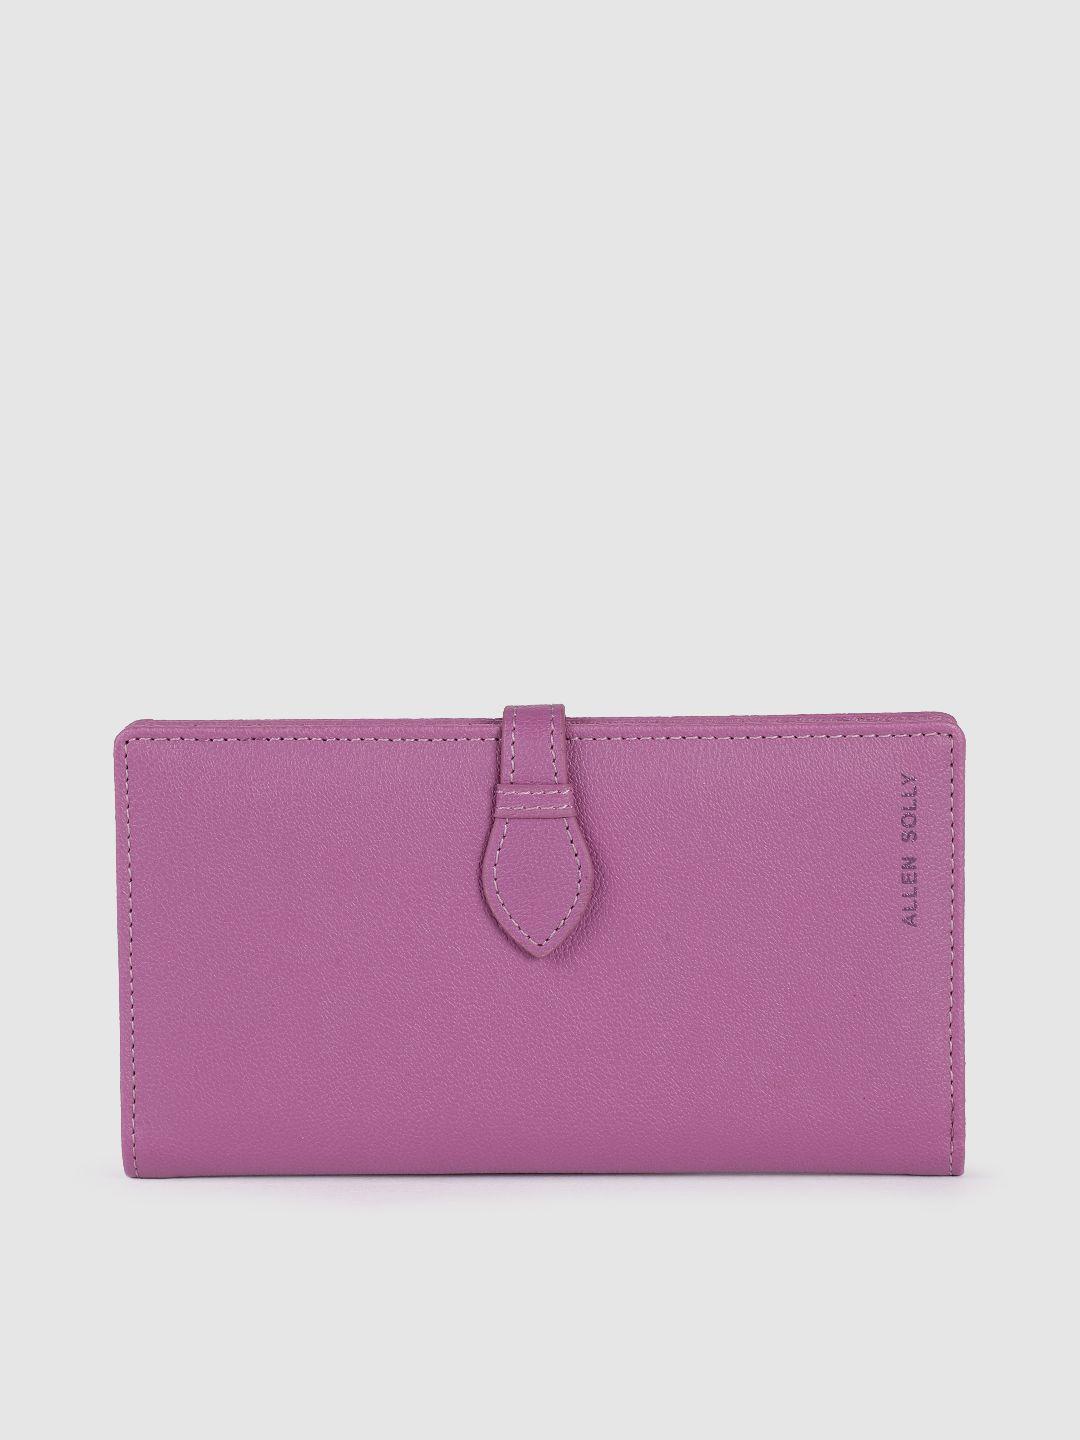 allen solly women purple pu two fold wallet